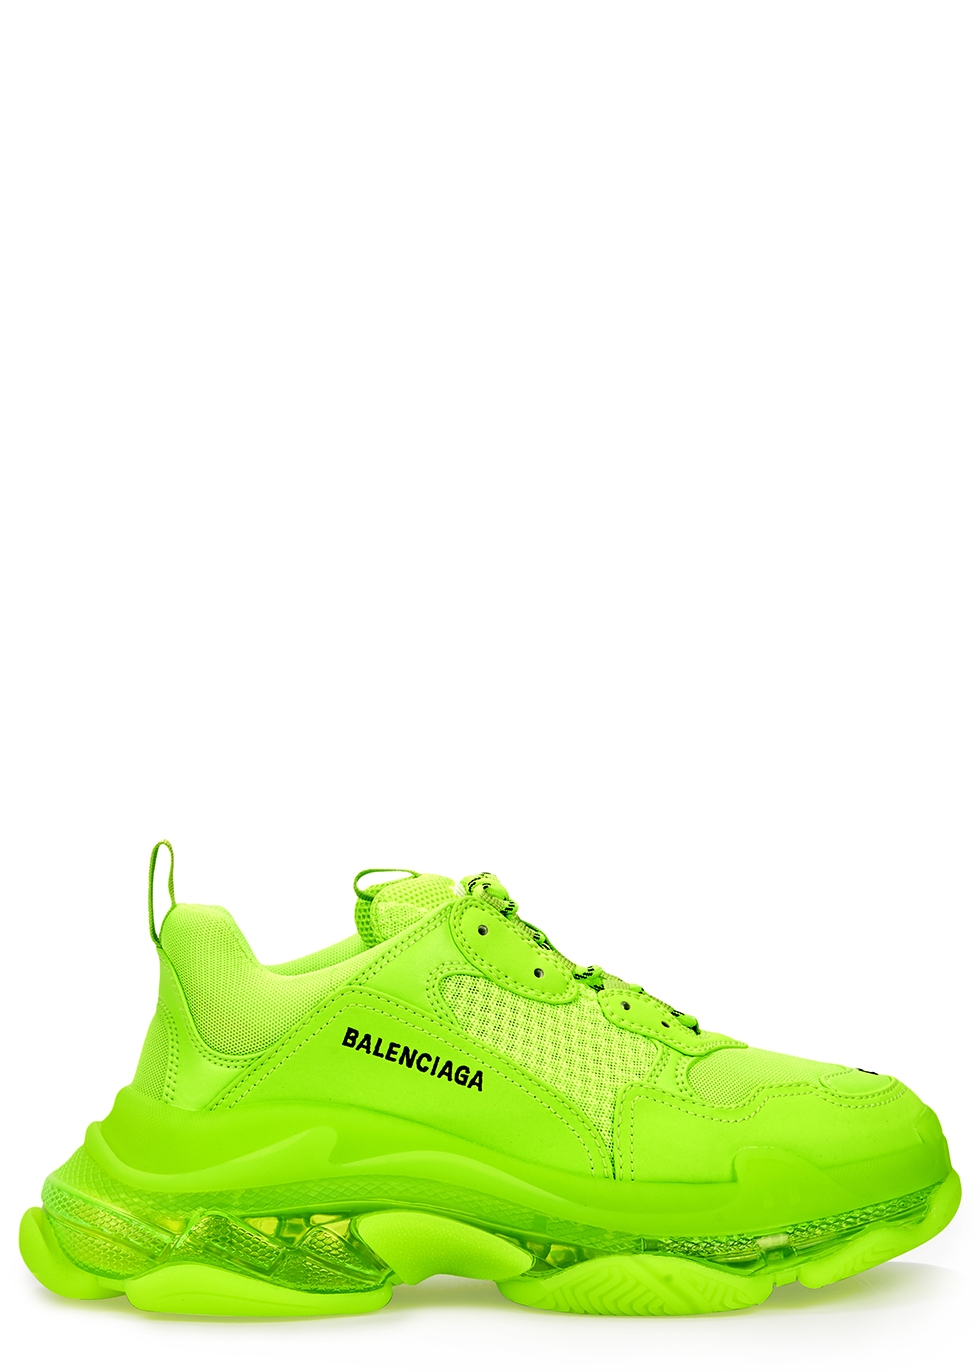 balenciaga sneakers green yellow